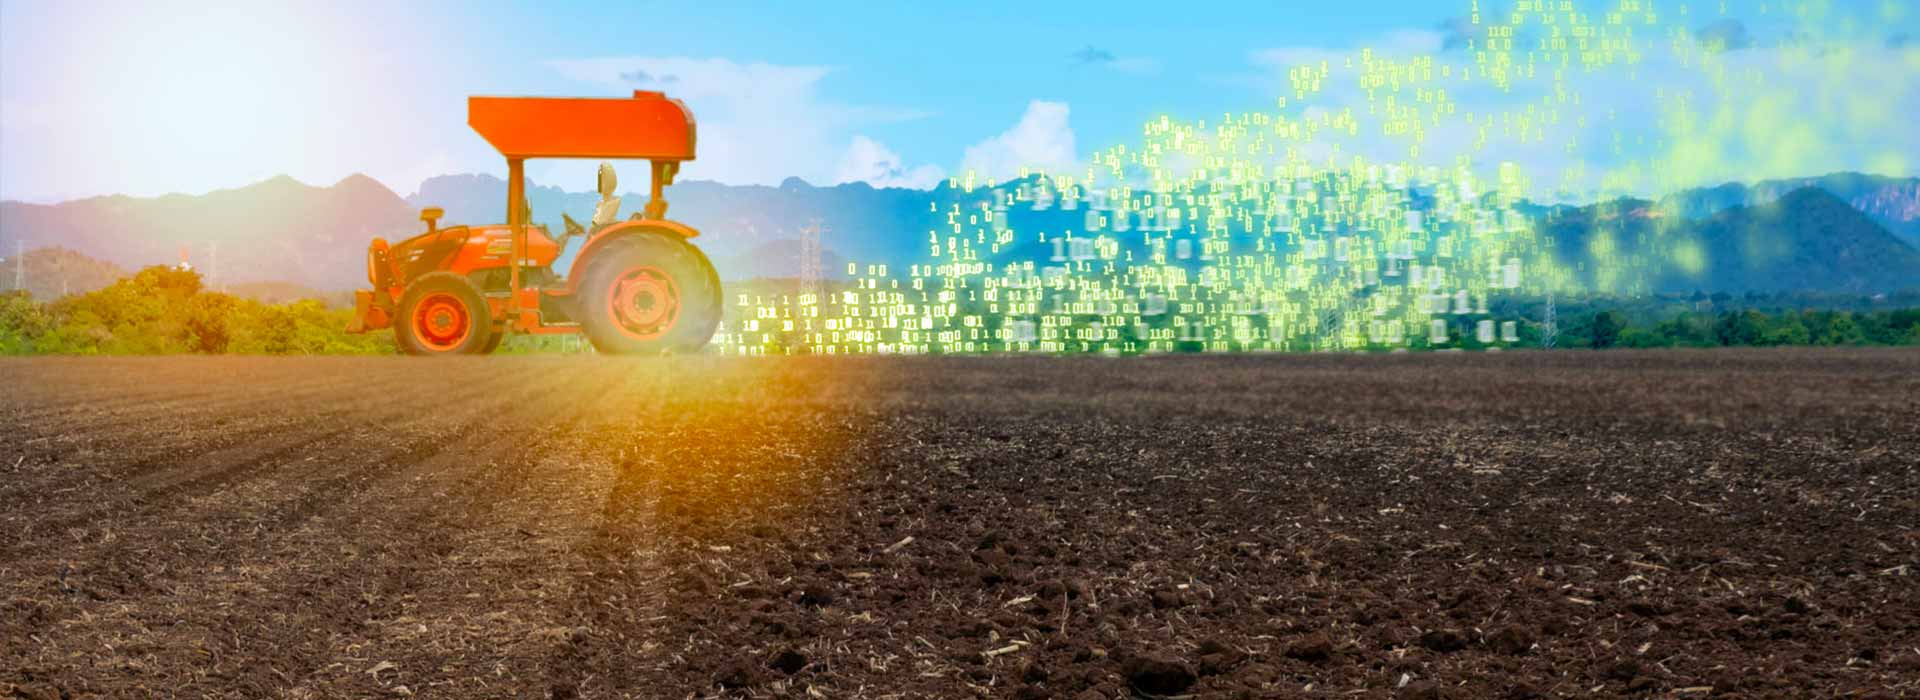 Innovazioni agricole, un’evoluzione continua